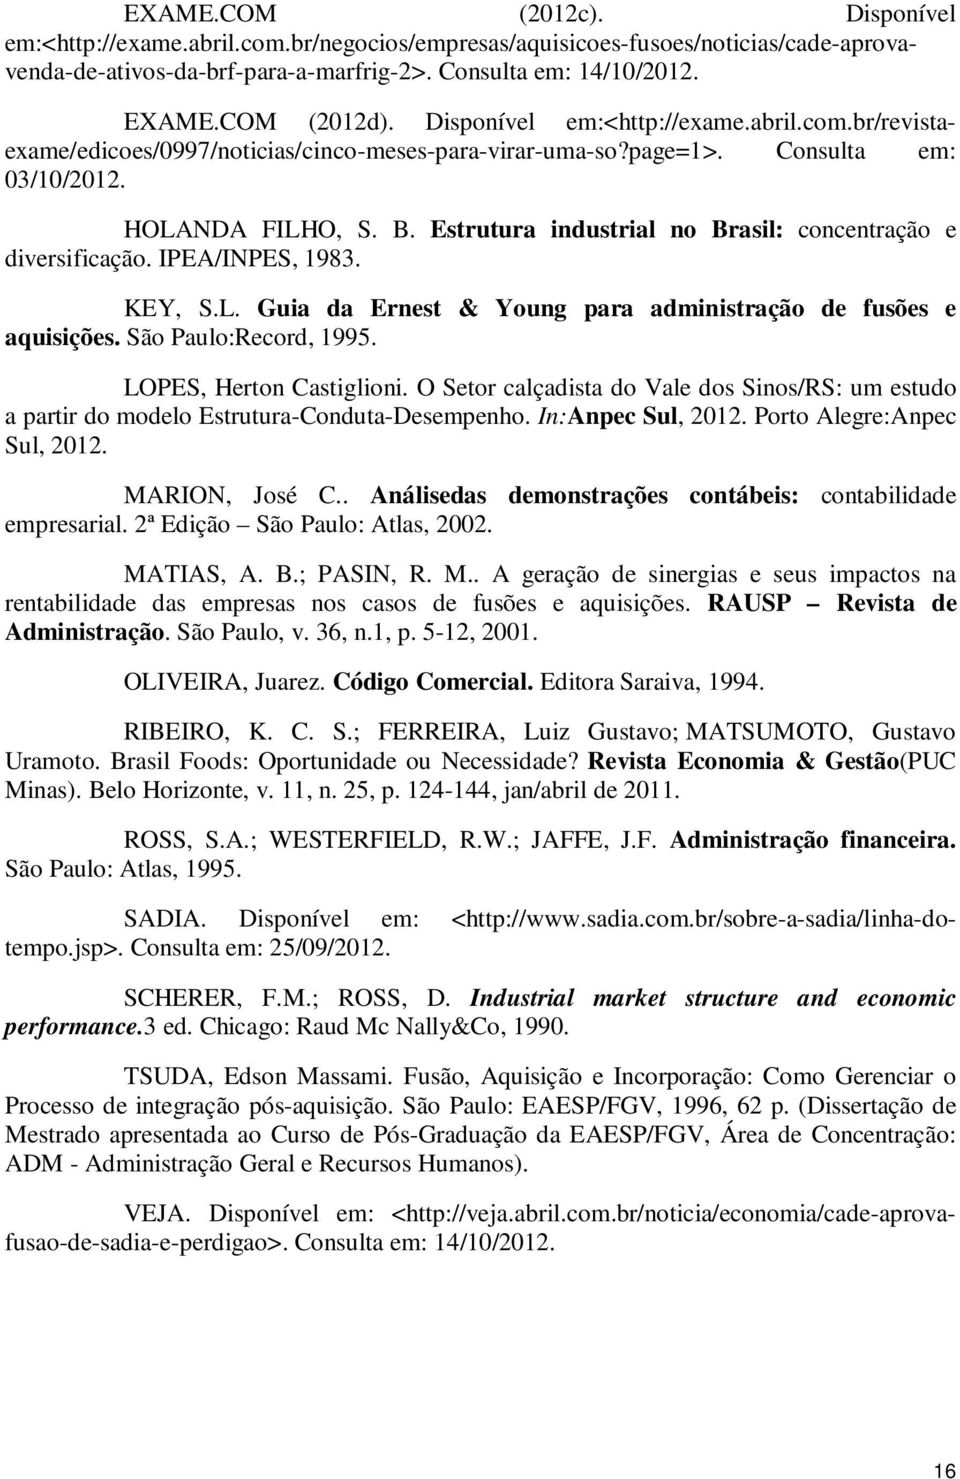 Estrutura industrial no Brasil: concentração e diversificação. IPEA/INPES, 1983. KEY, S.L. Guia da Ernest & Young para administração de fusões e aquisições. São Paulo:Record, 1995.